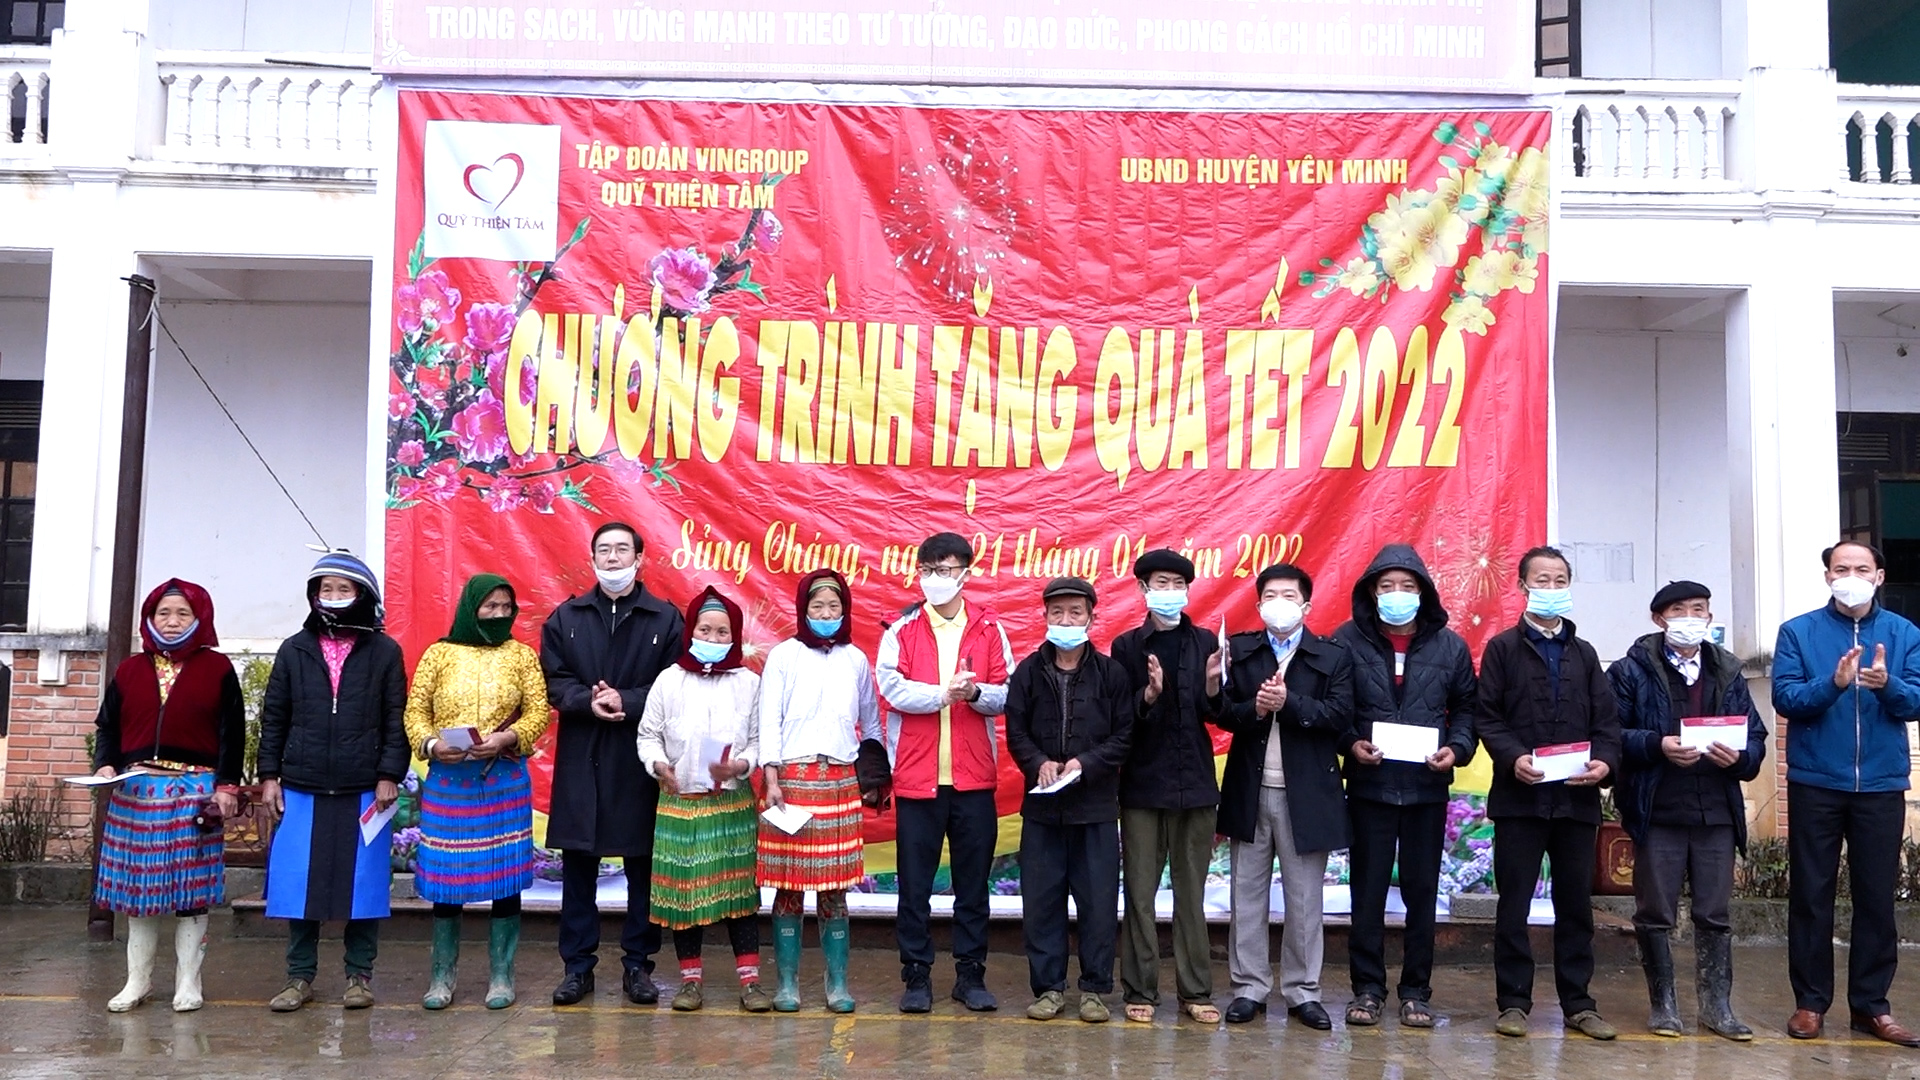 Quỹ Thiện Tâm tập đoàn Vingroup tặng quà Tết cho hộ nghèo trên địa bàn huyện Yên Minh